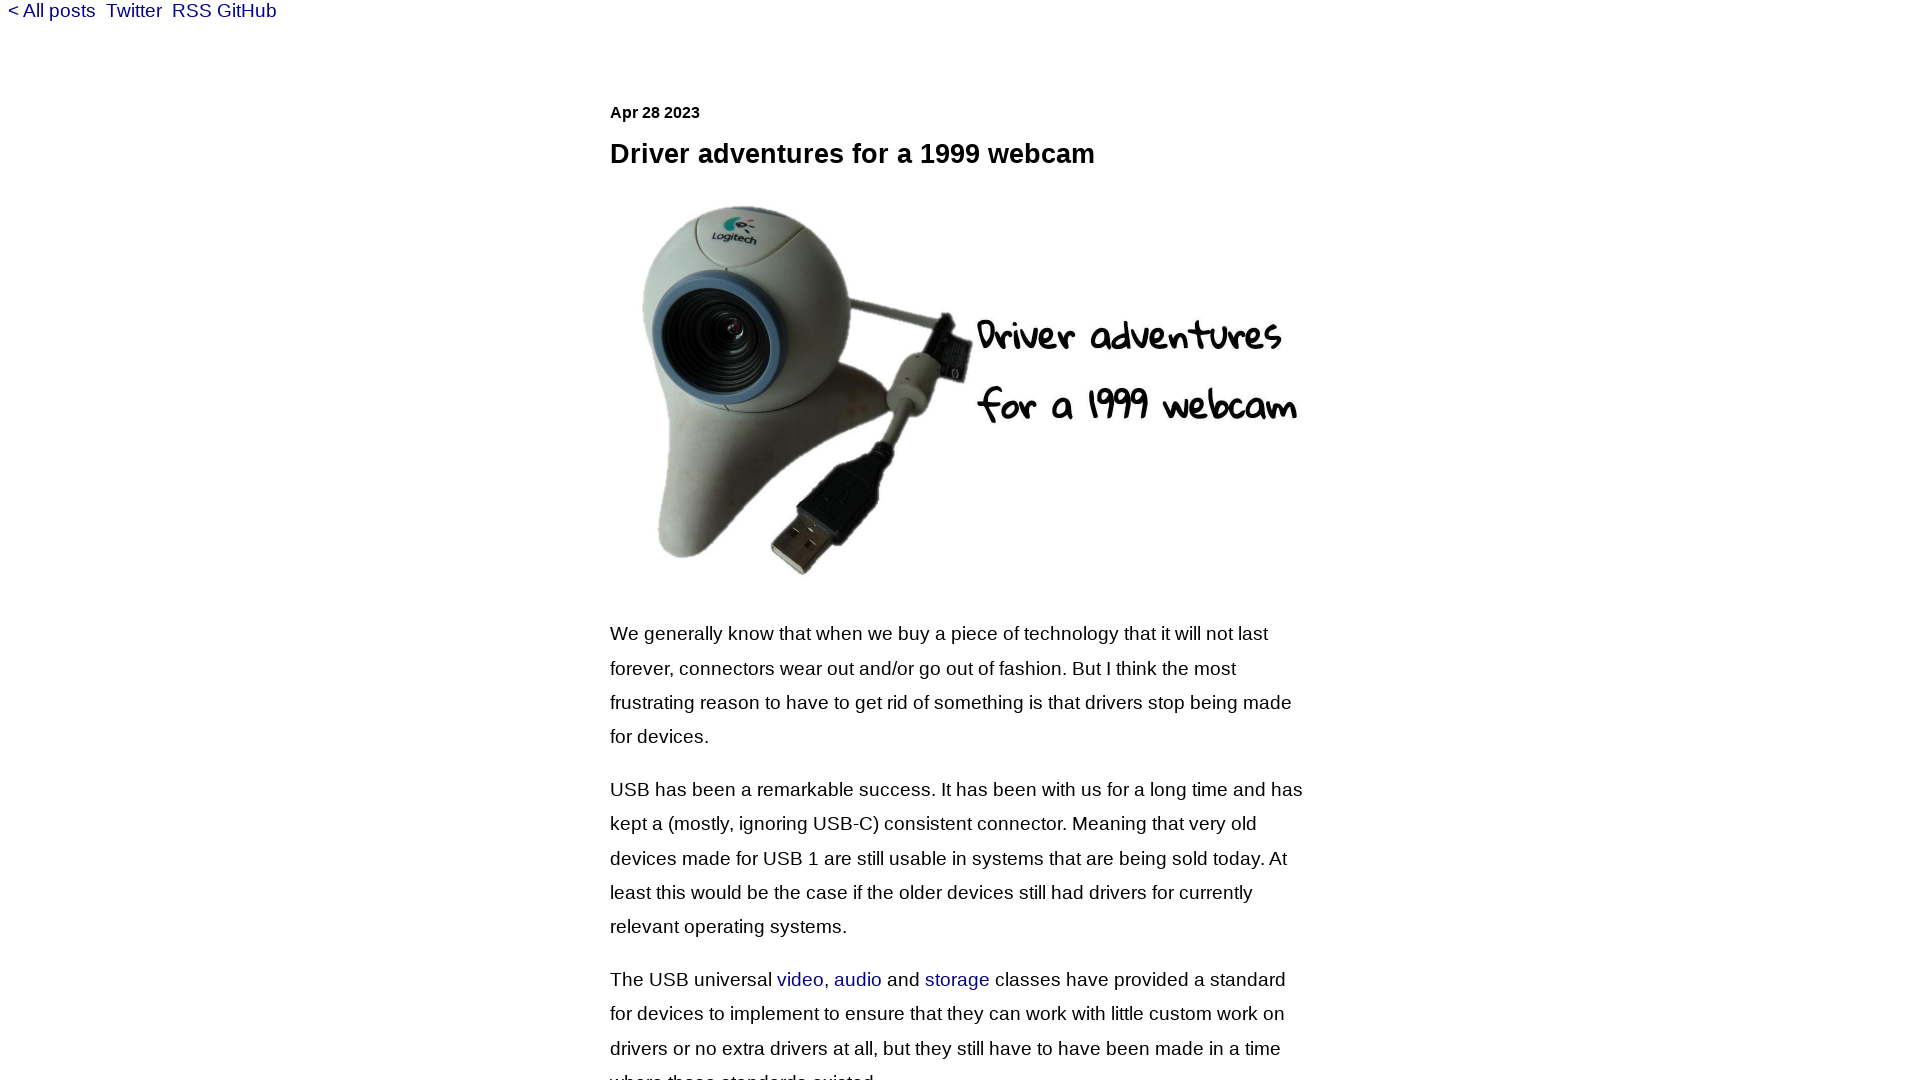 Driver adventures for a 1999 webcam